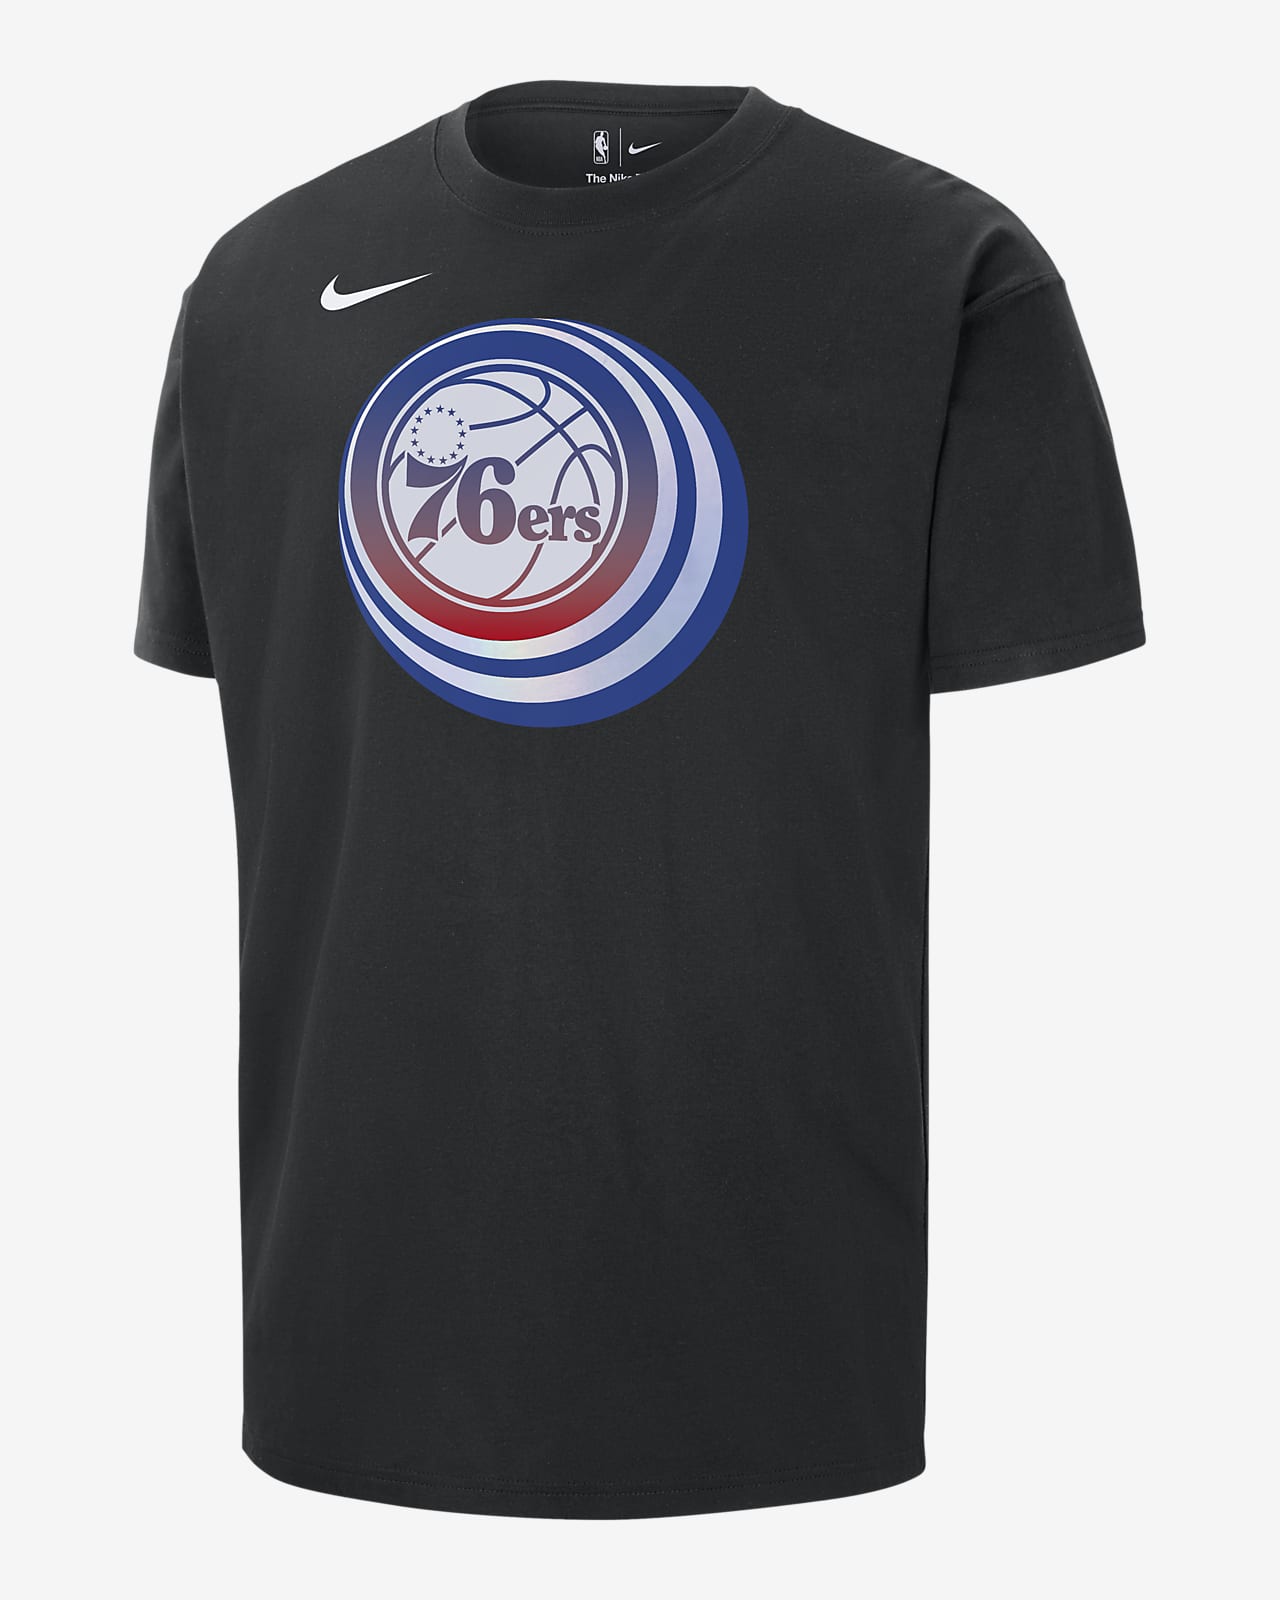 Playera Nike de la NBA para hombre Philadelphia 76ers Essential